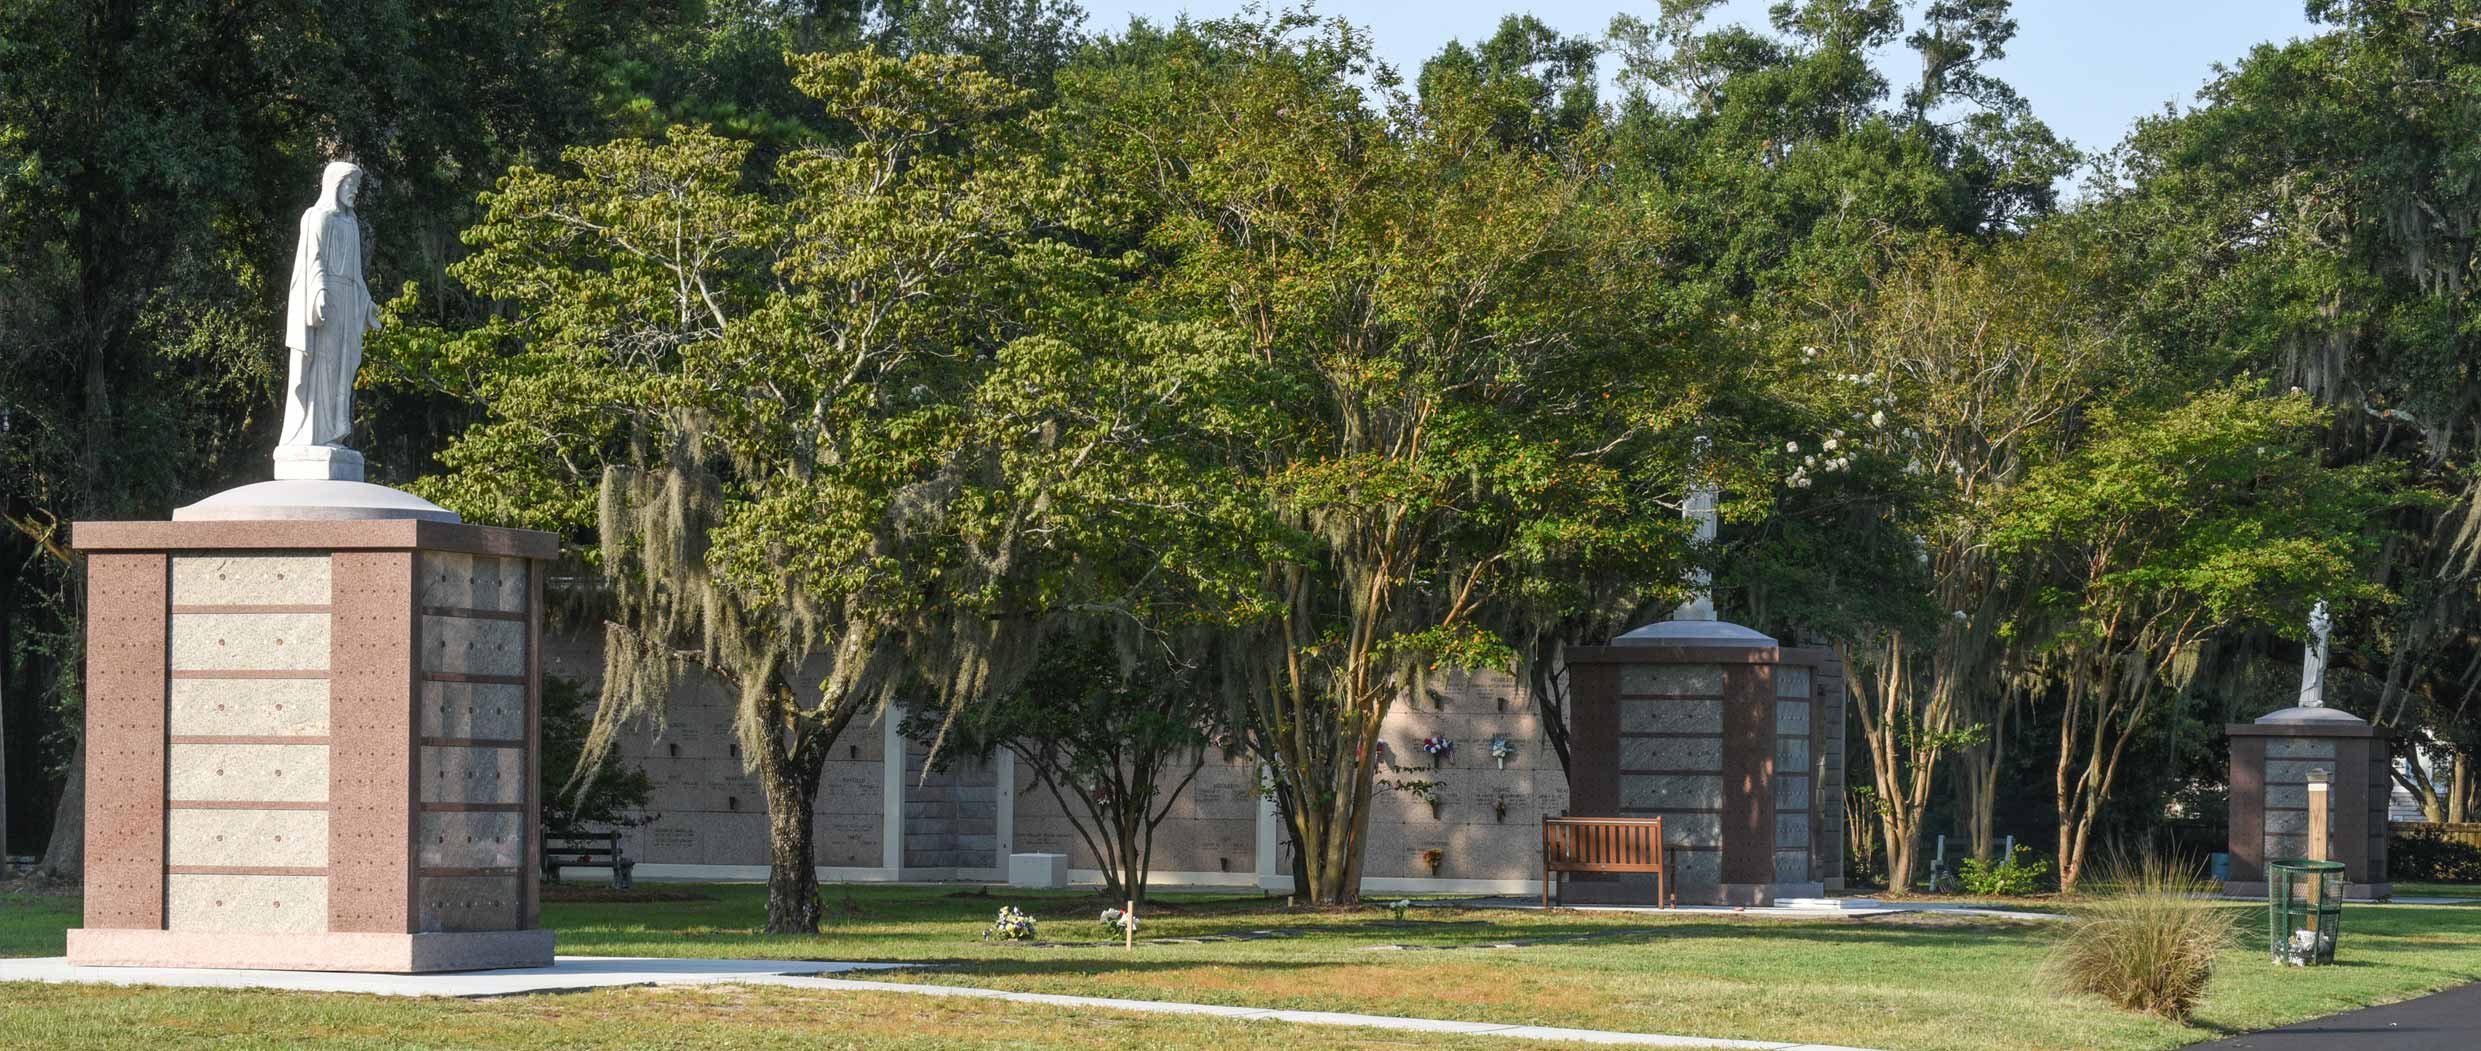 Holy Cross Cemetery Catholic Cemeteries of South Carolina Roman